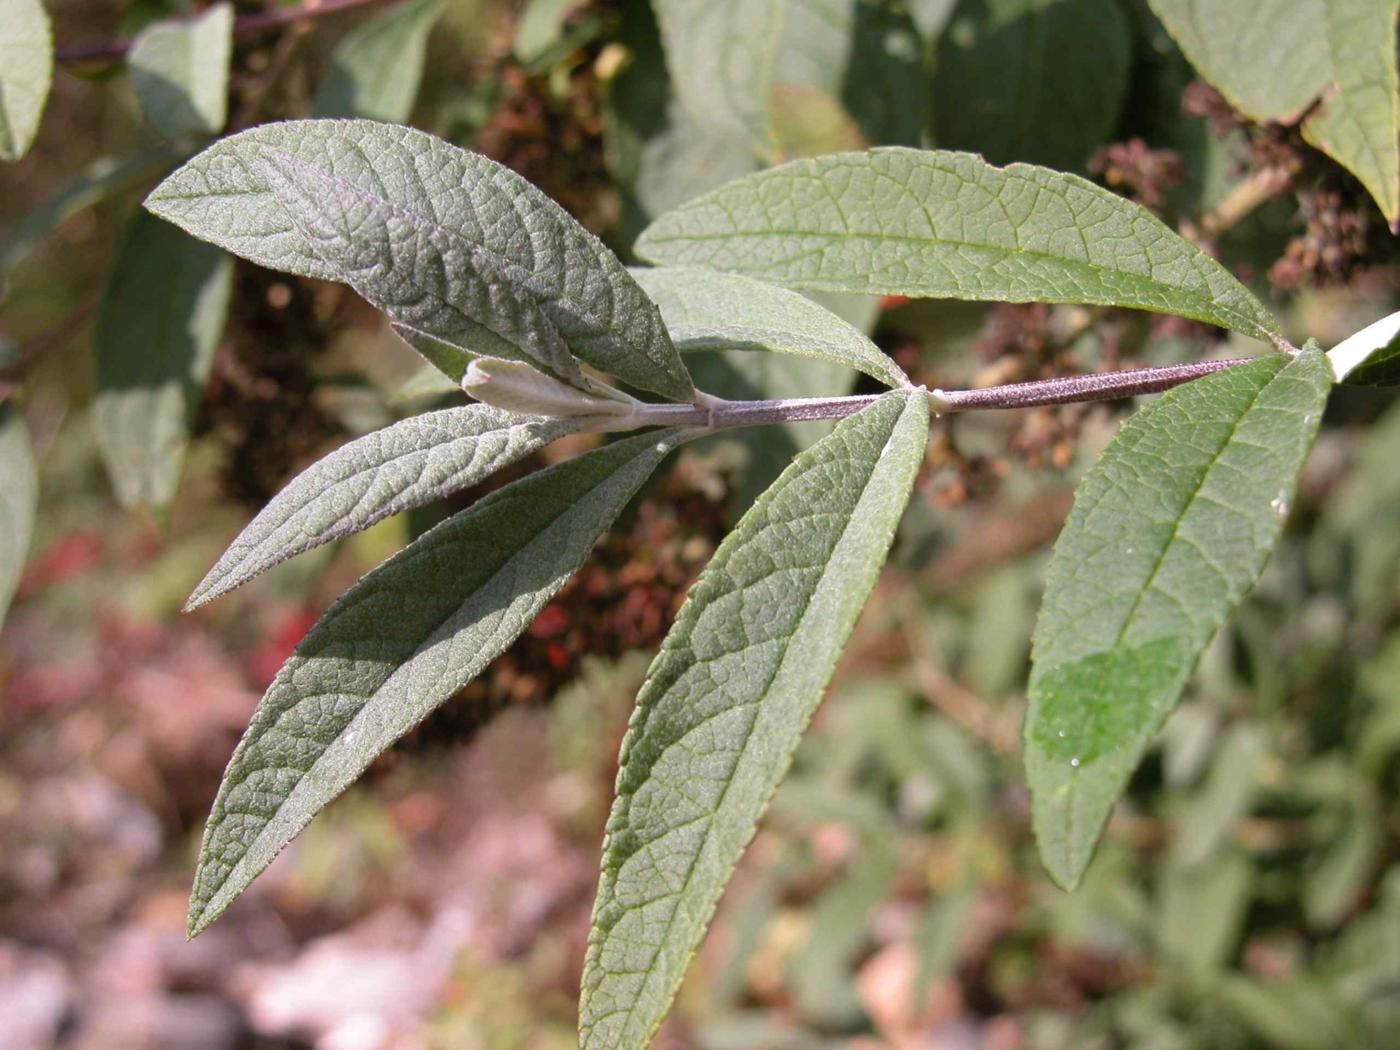 Buddleia leaf